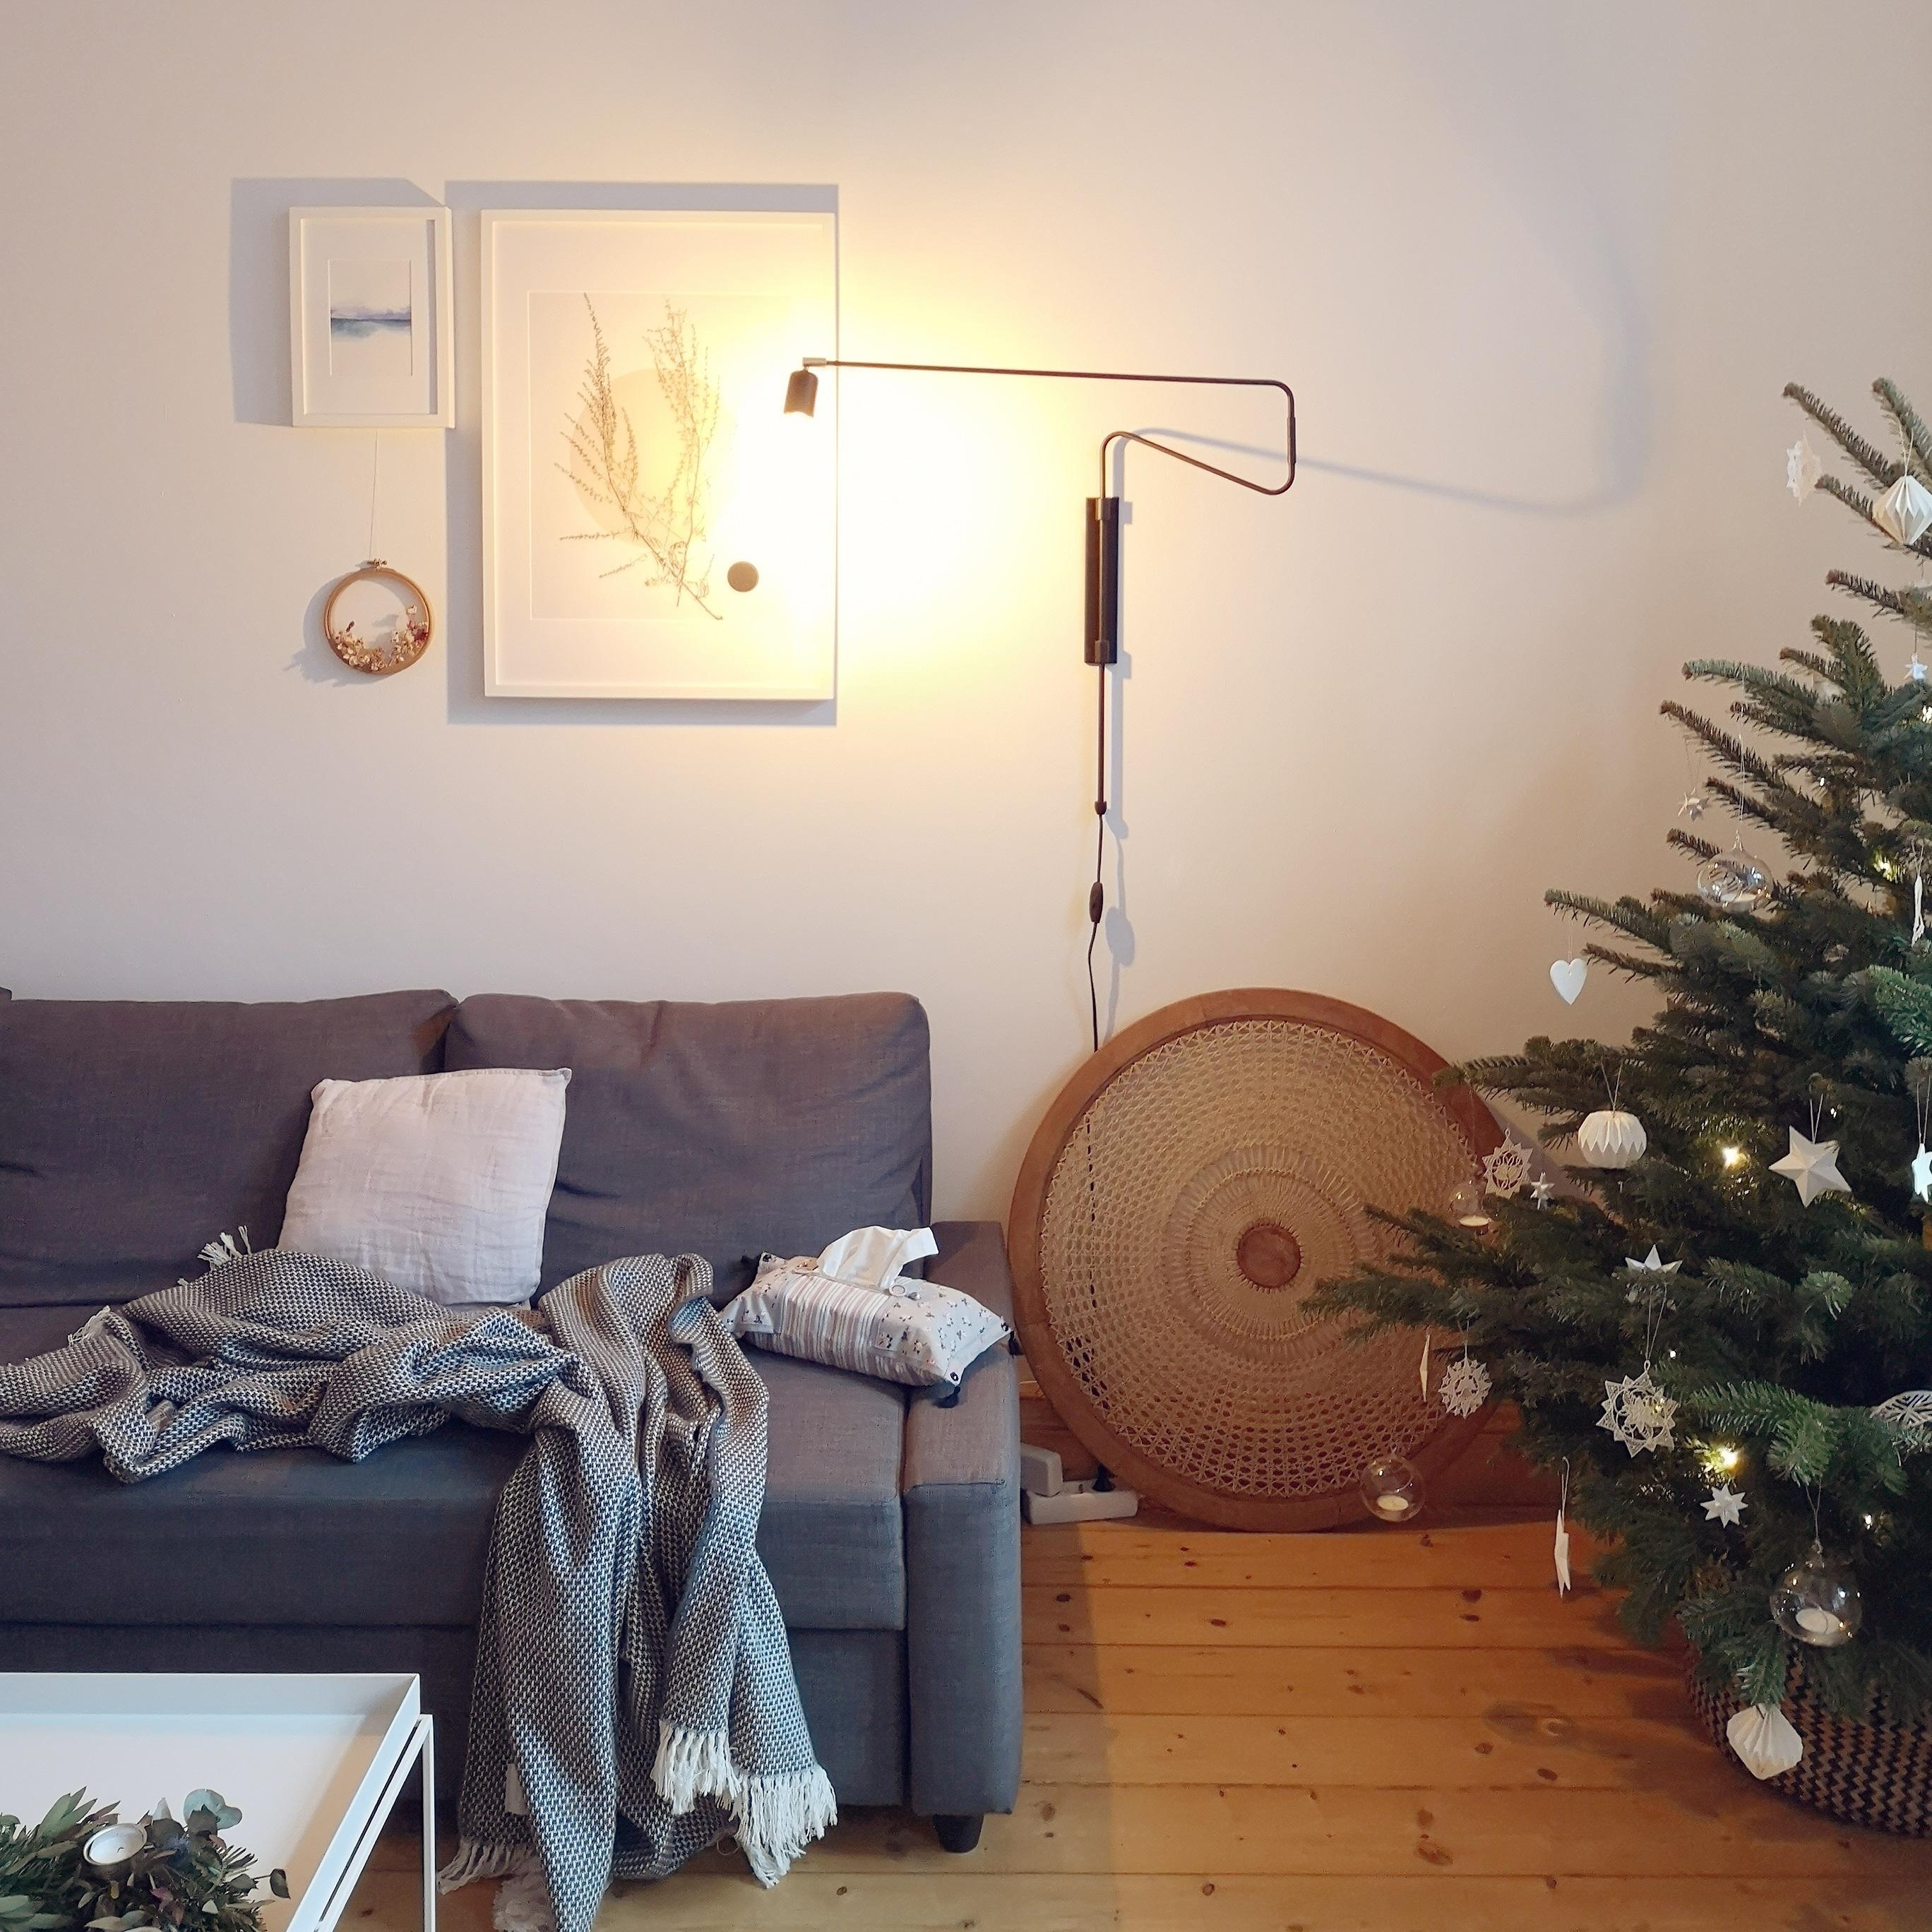 Hier wird es jetzt gemütlich, denn heute war mein letzter Arbeitstag 🎉.
#wohnzimmer #weihnachtsbaum #hygge #interior